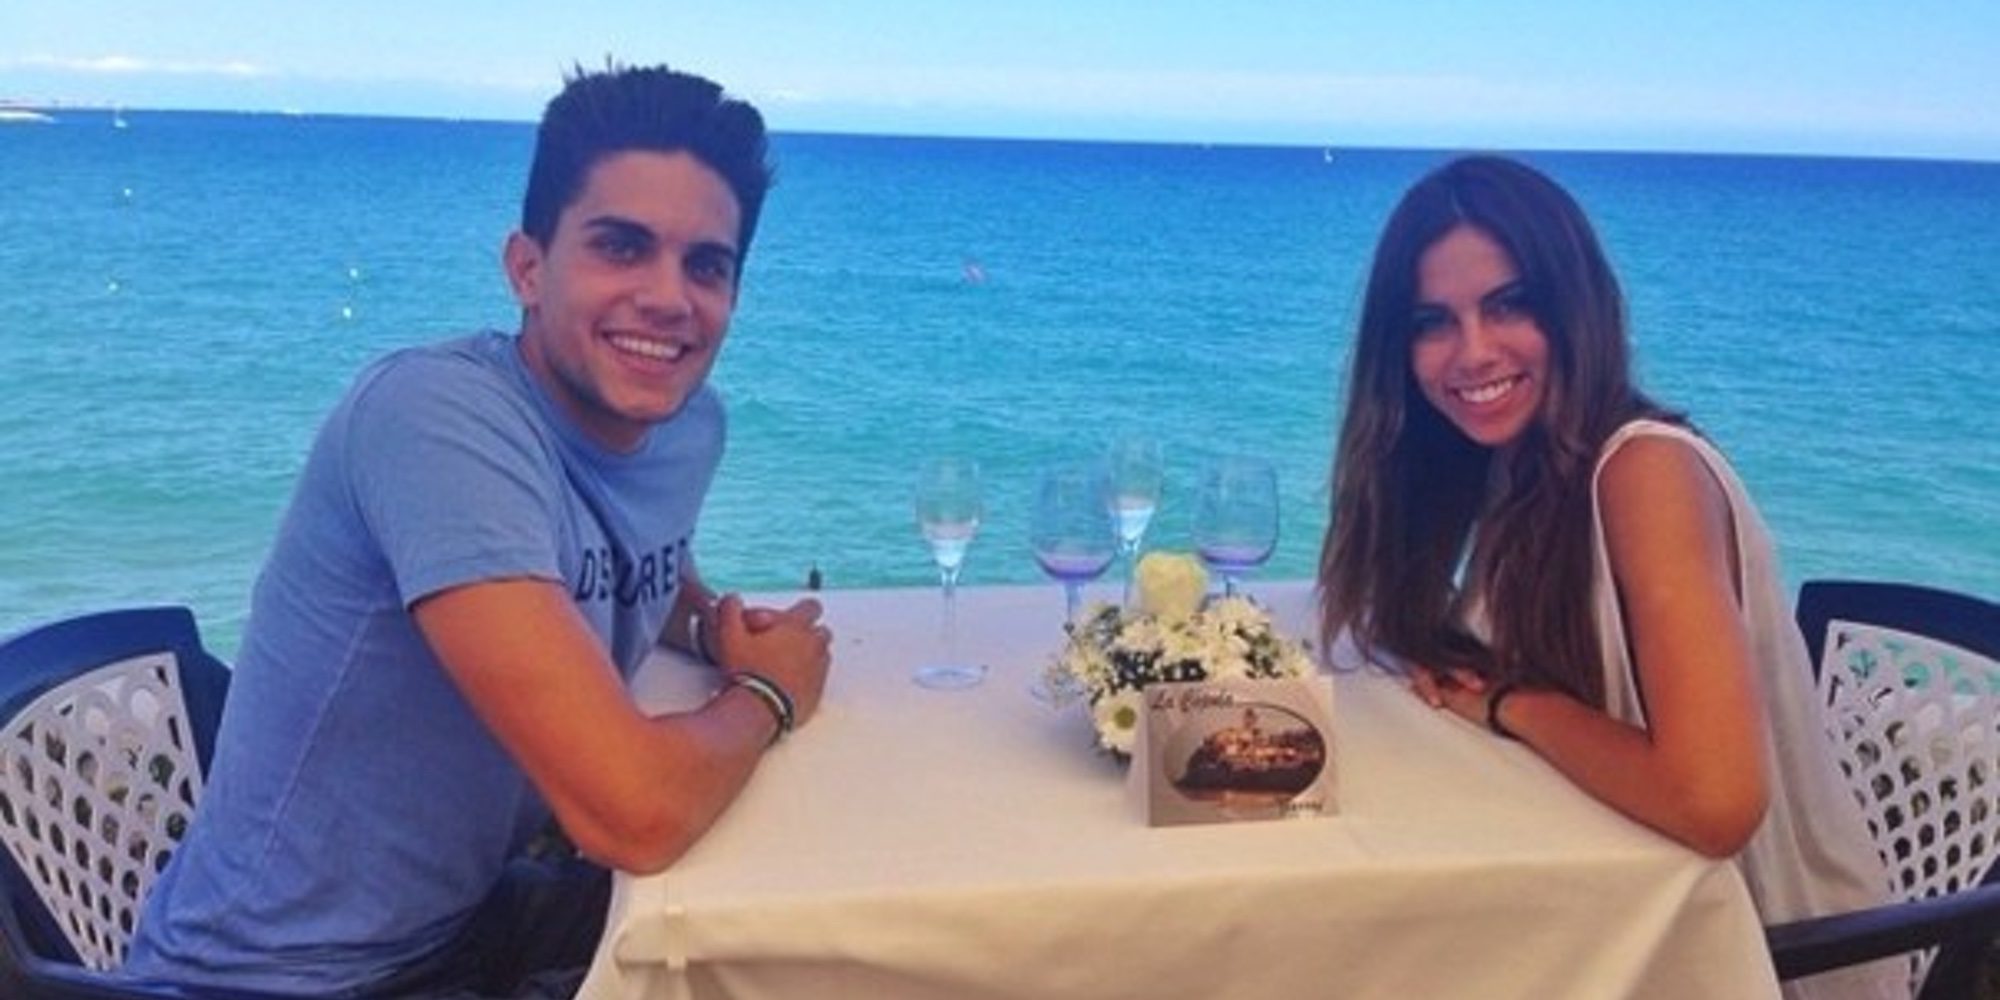 Marc Bartra y Melissa Jiménez anuncian su boda tras dos años y medio de relación